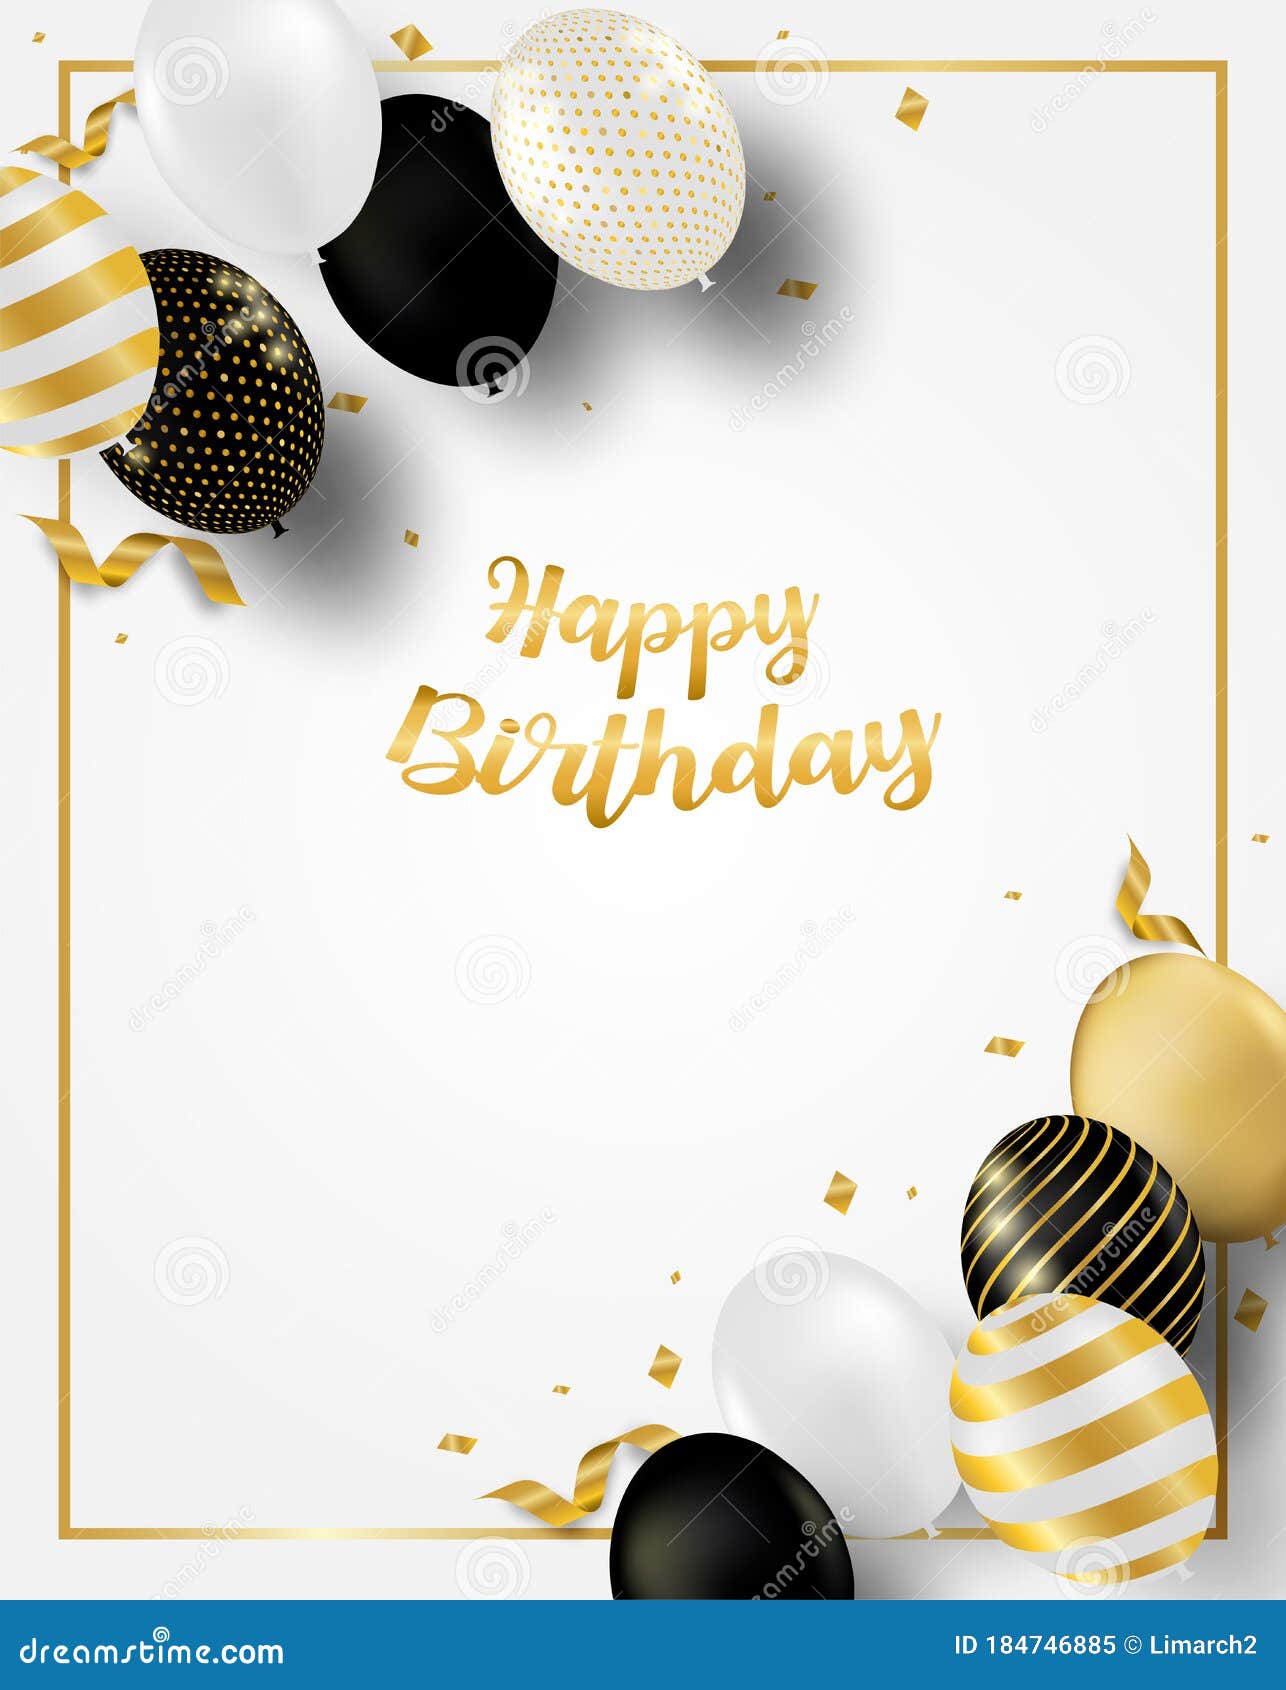 Thiết kế thẻ chúc mừng sinh nhật với màu đen, trắng, vàng sẽ giúp bạn thể hiện tình cảm đến người nhận của mình một cách đặc biệt và ấn tượng. Với những hoạ tiết ngộ nghĩnh và màu sắc trang nhã, bức thẻ này chắc chắn sẽ làm người nhận cảm thấy vinh dự và hạnh phúc.